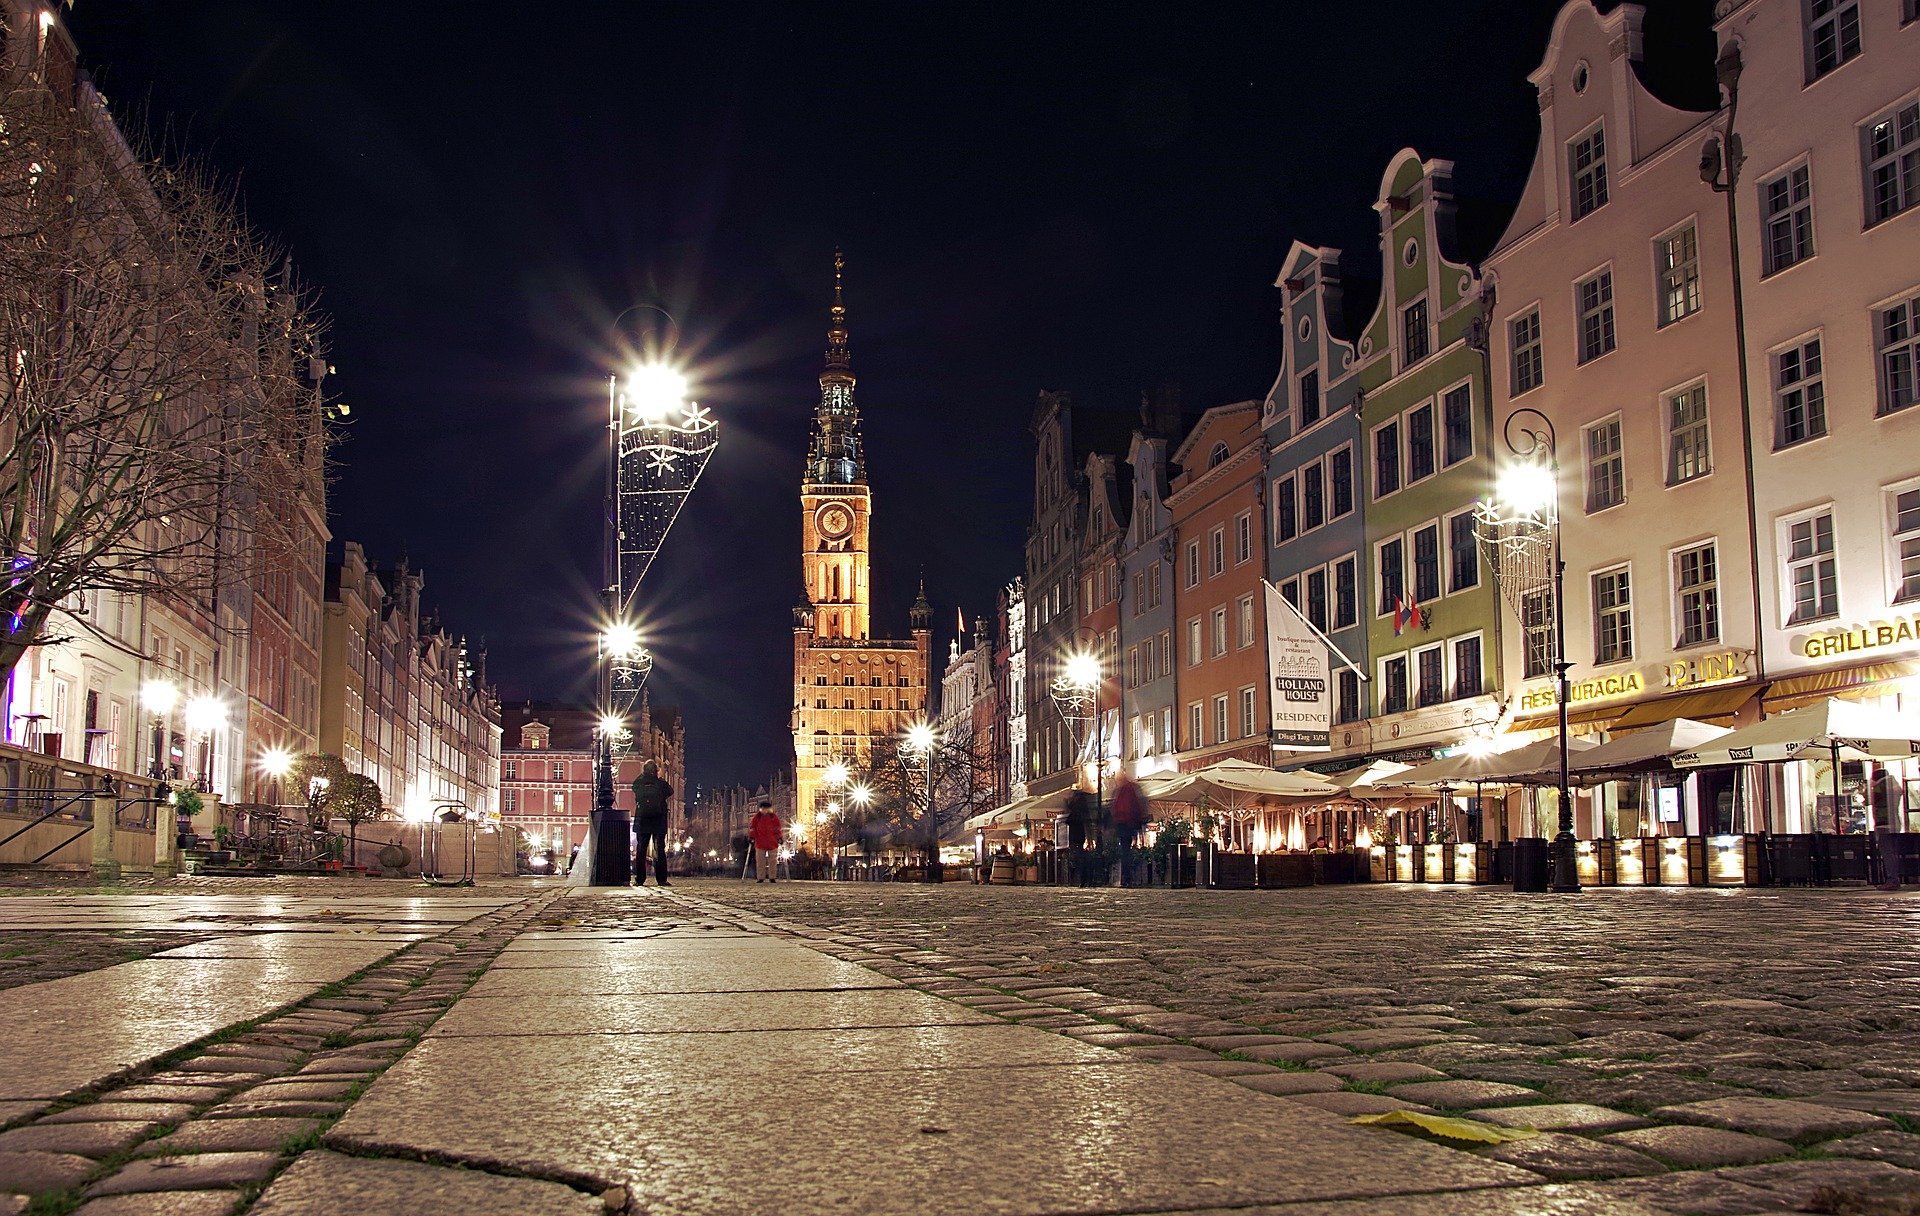 Zabytki Gdańska: ratusz